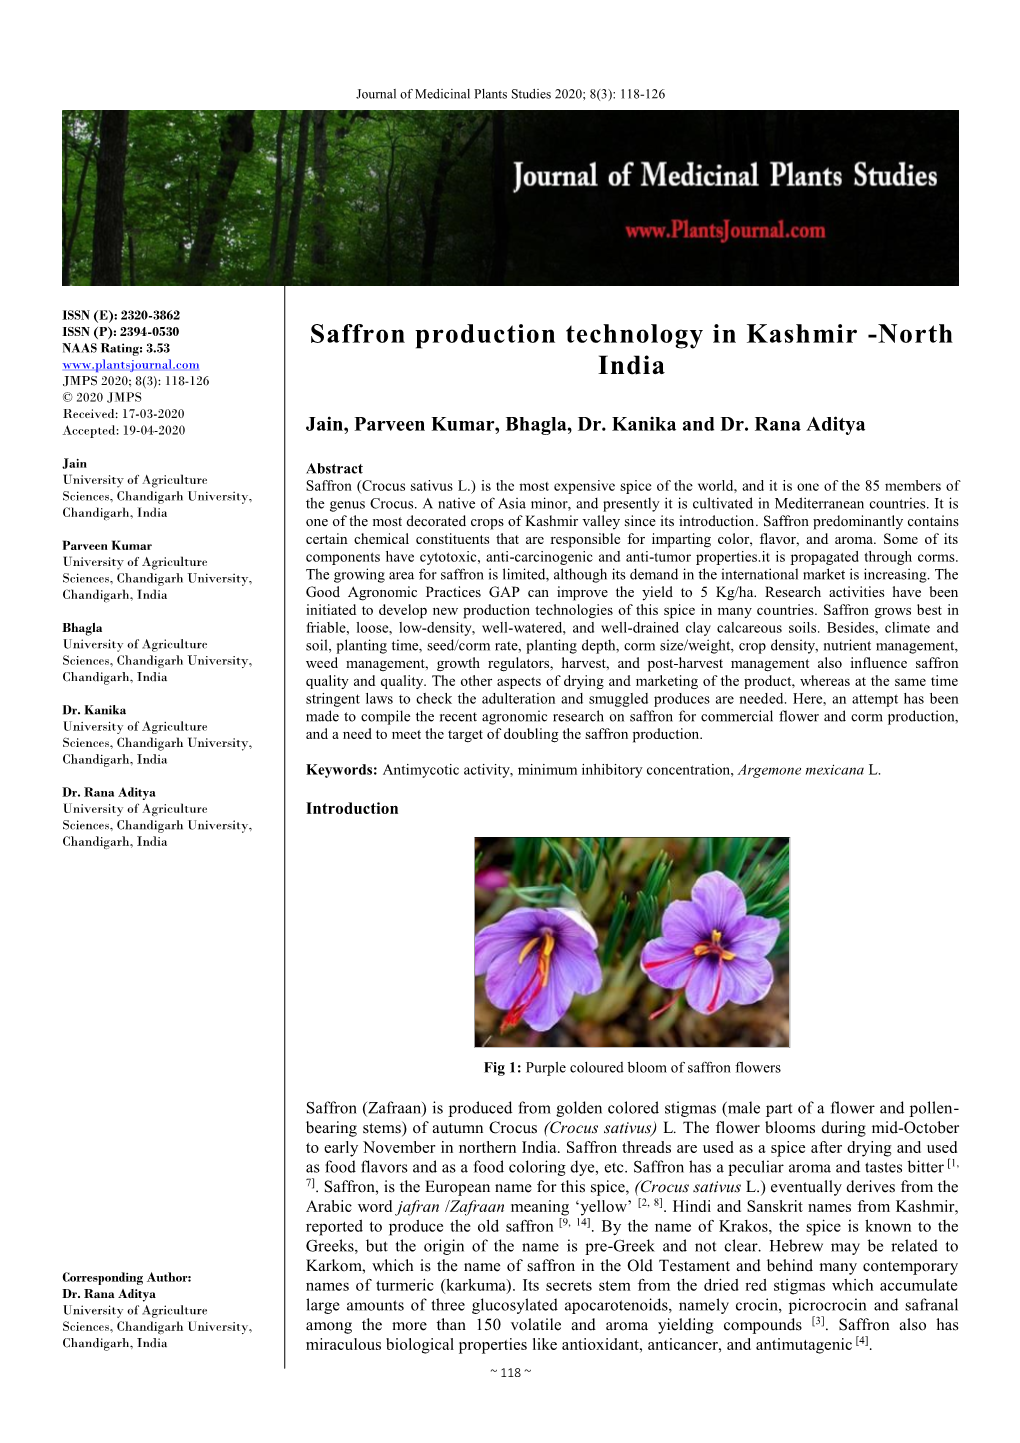 Saffron Production Technology in Kashmir